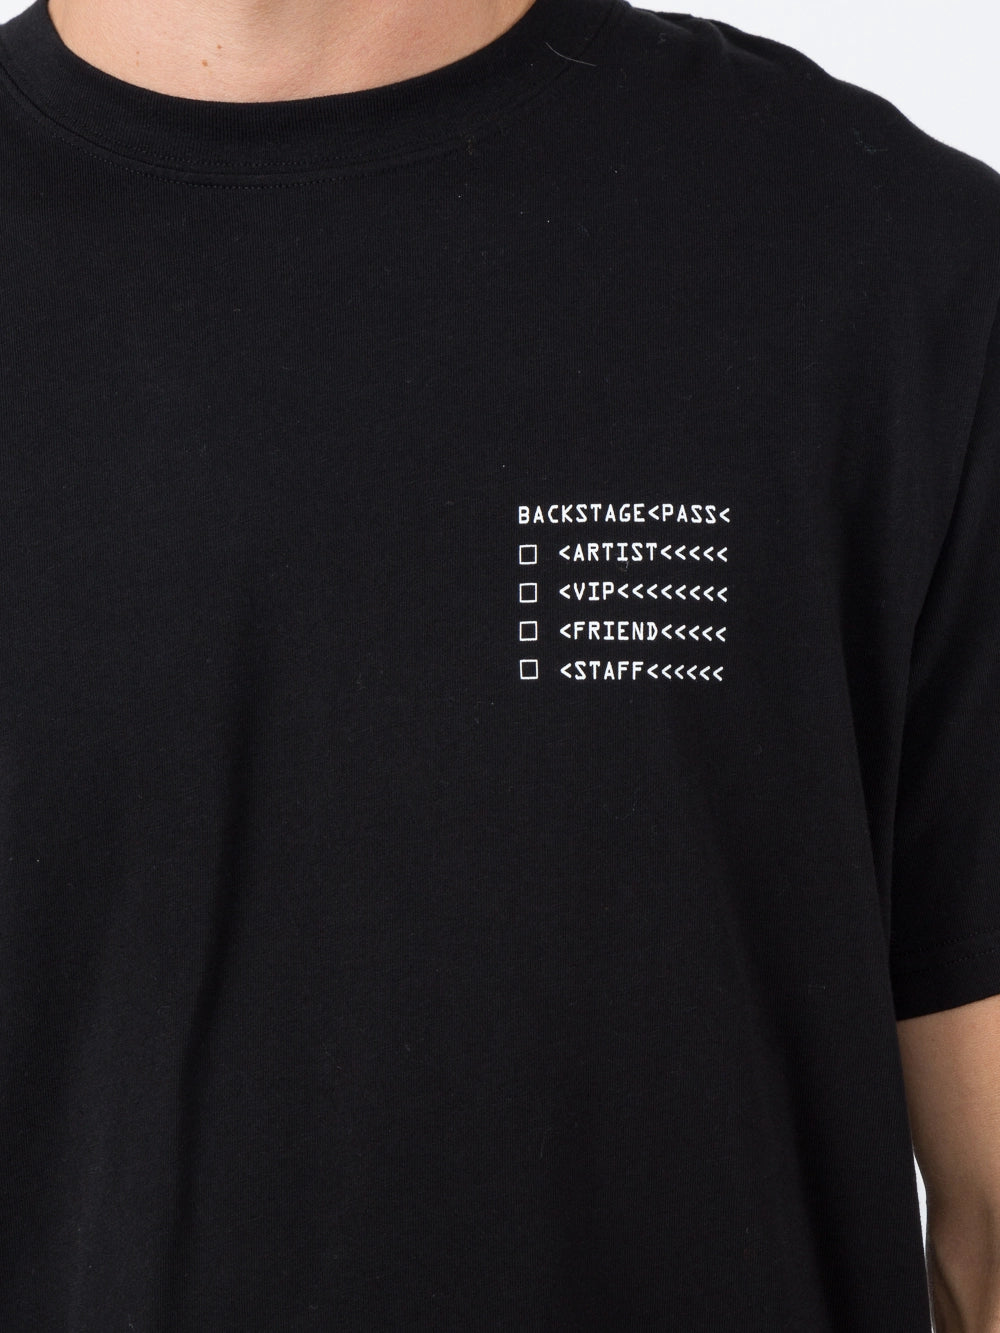 Moncler x Fragment Hiroshi Fujiwara ‘Backstage’ T-Shirt